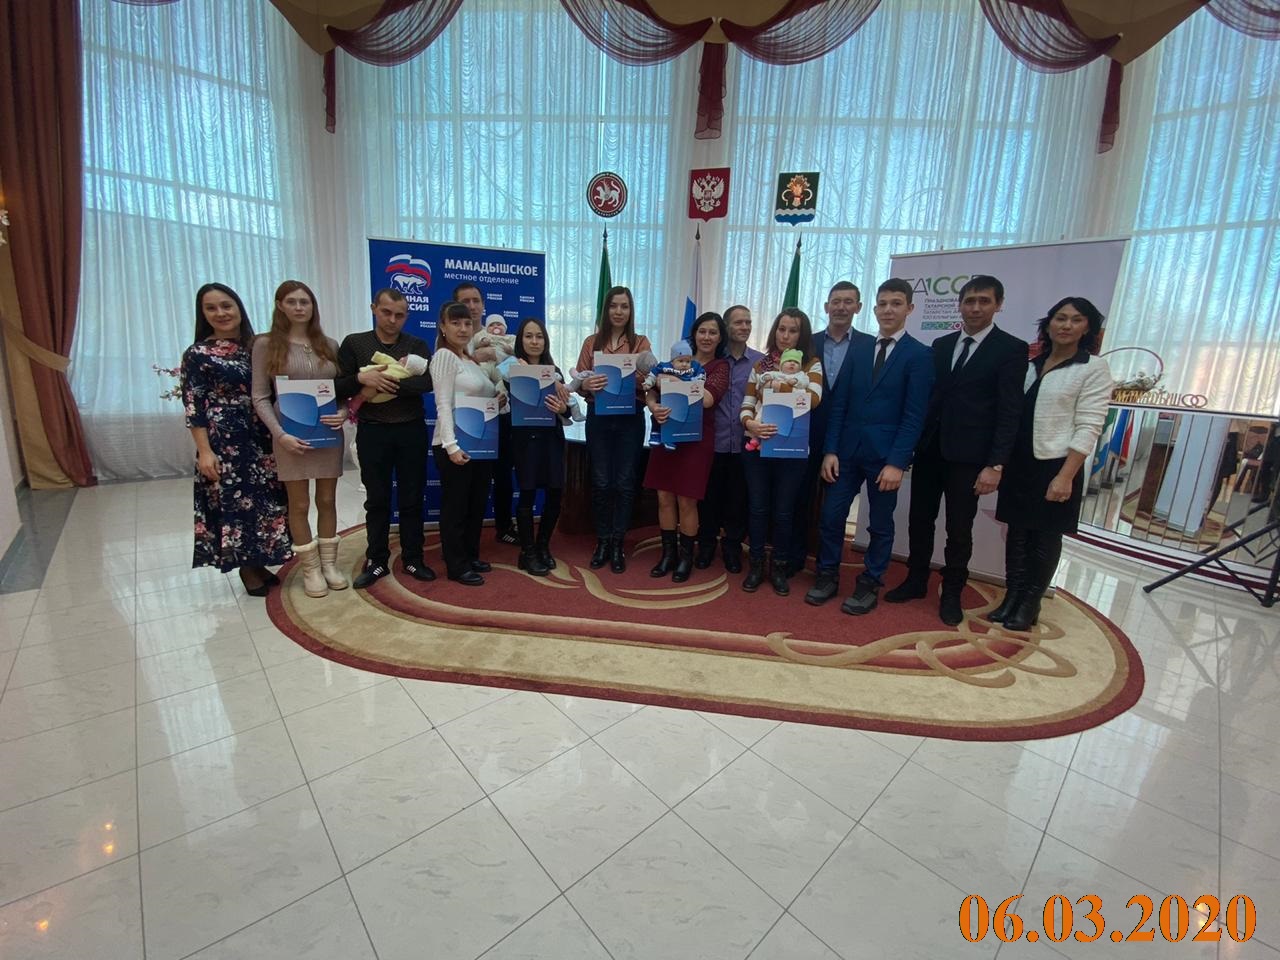 В преддверии Женского Дня 8 марта  в отделе ЗАГС Мамадышского района торжественно вручили сертификаты на материнский капитал